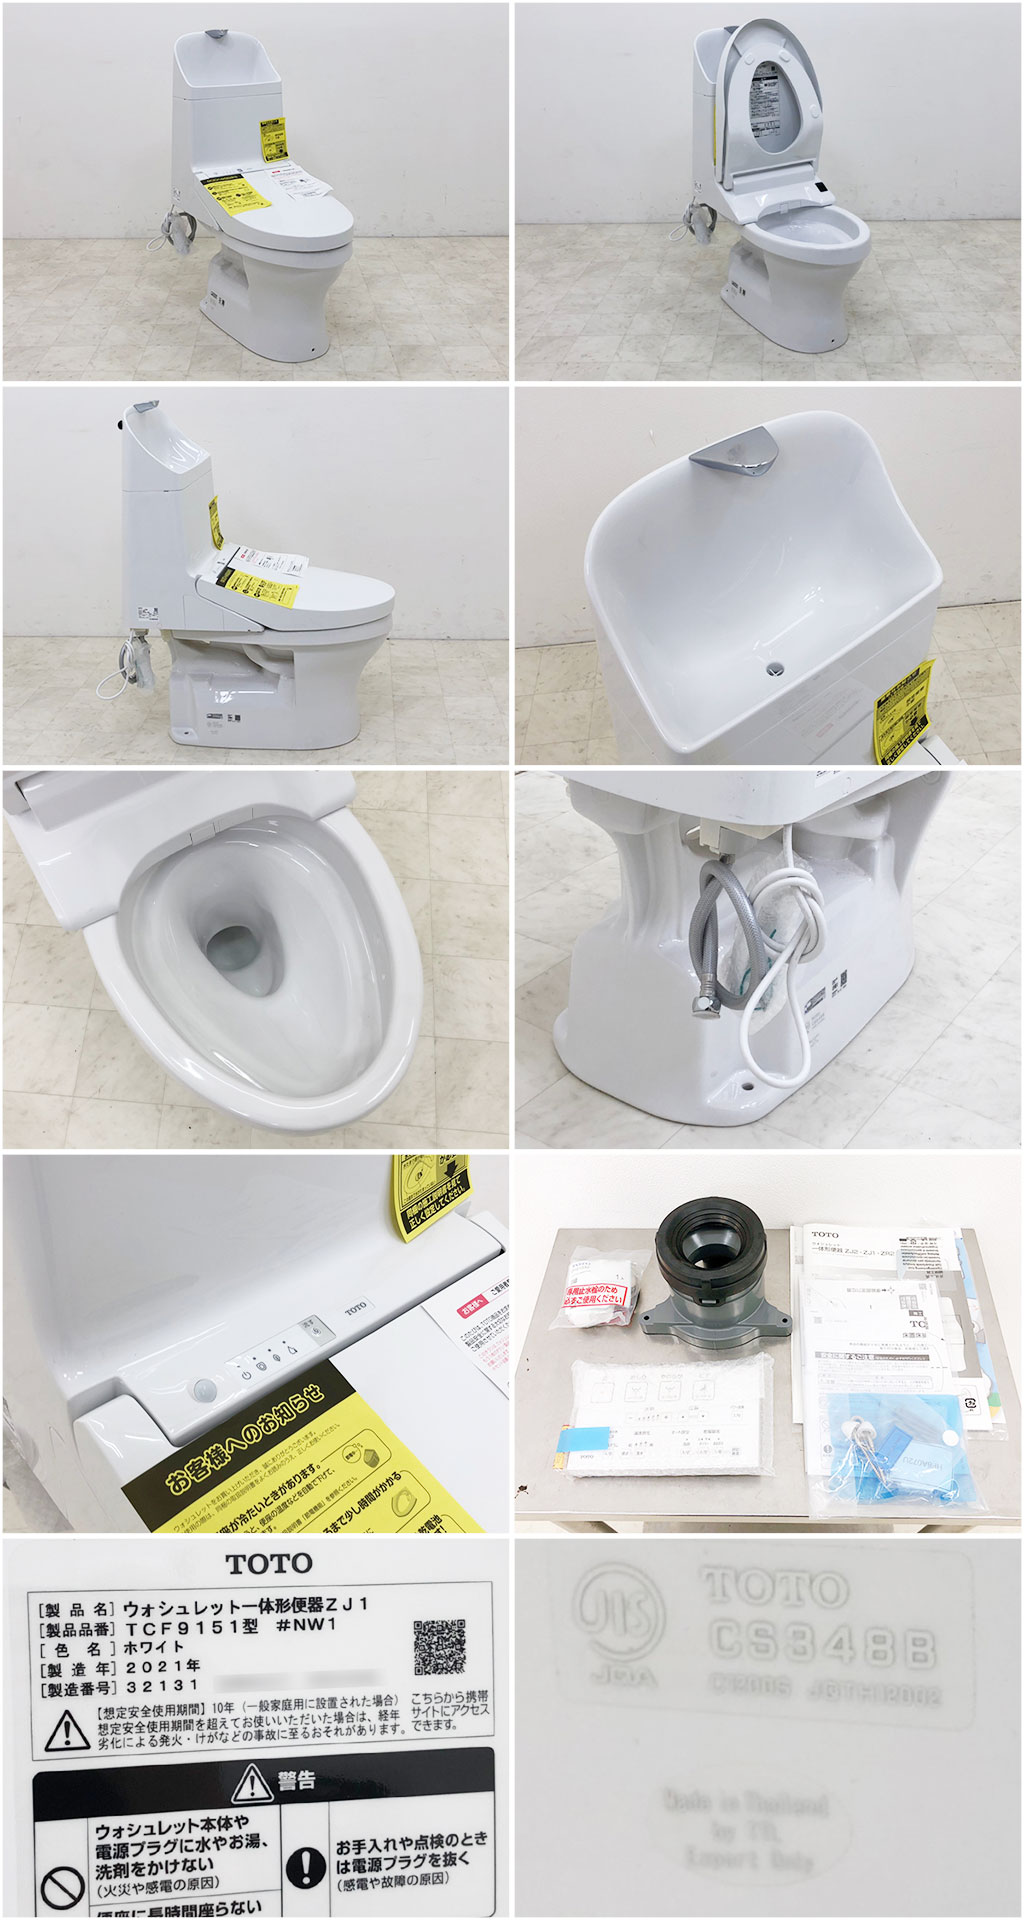 【長期納期】未使用 TOTO トイレ ウォシュレット一体型便器 ZJ1 #NW1 TCF9151/CS348B リモコン付/床排水/手洗い付き 便器